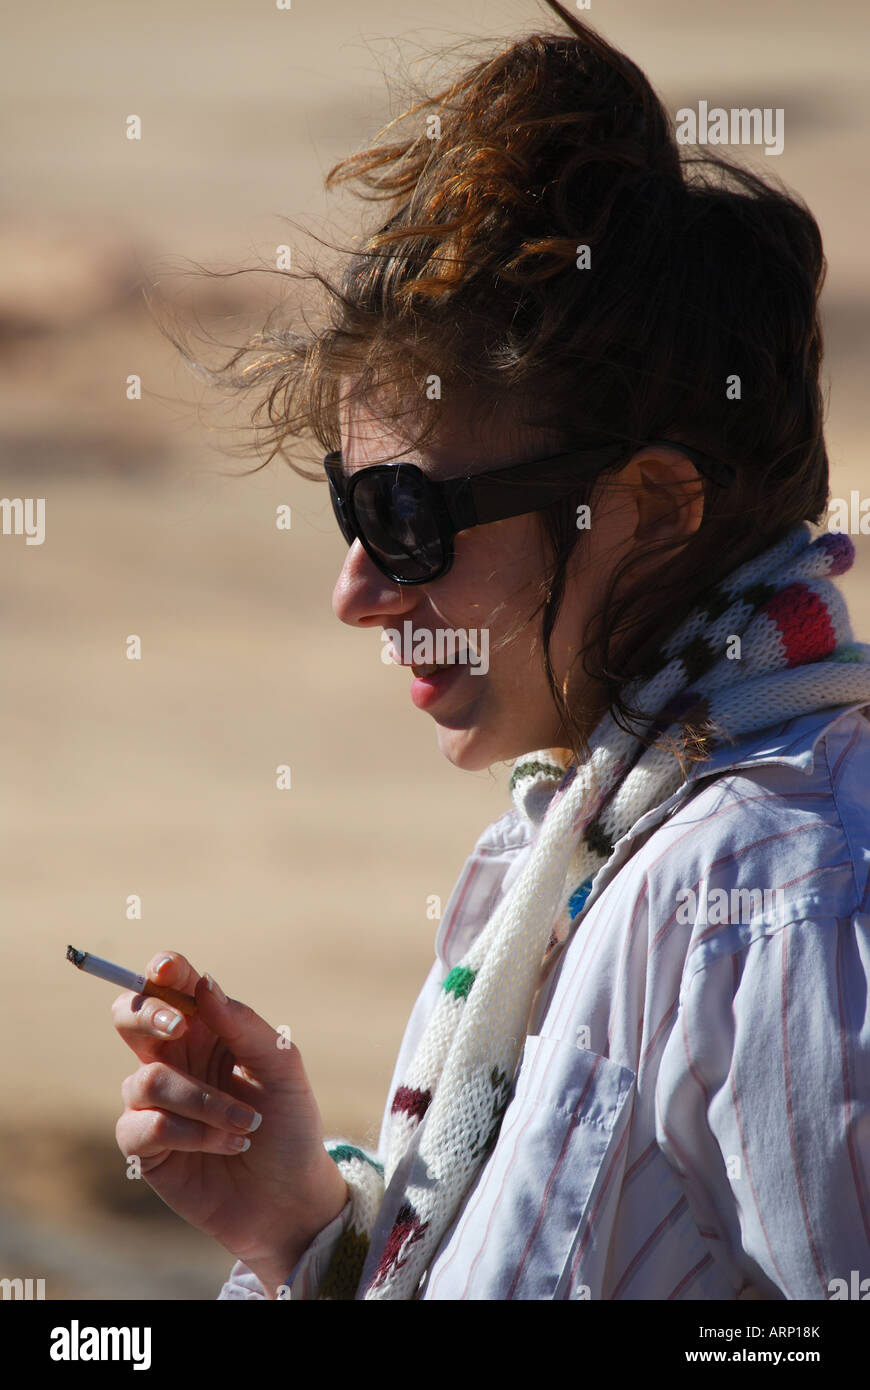 Porträt der jungen Frau, die raucht Zigarette, Sinai-Halbinsel, Ägypten Stockfoto